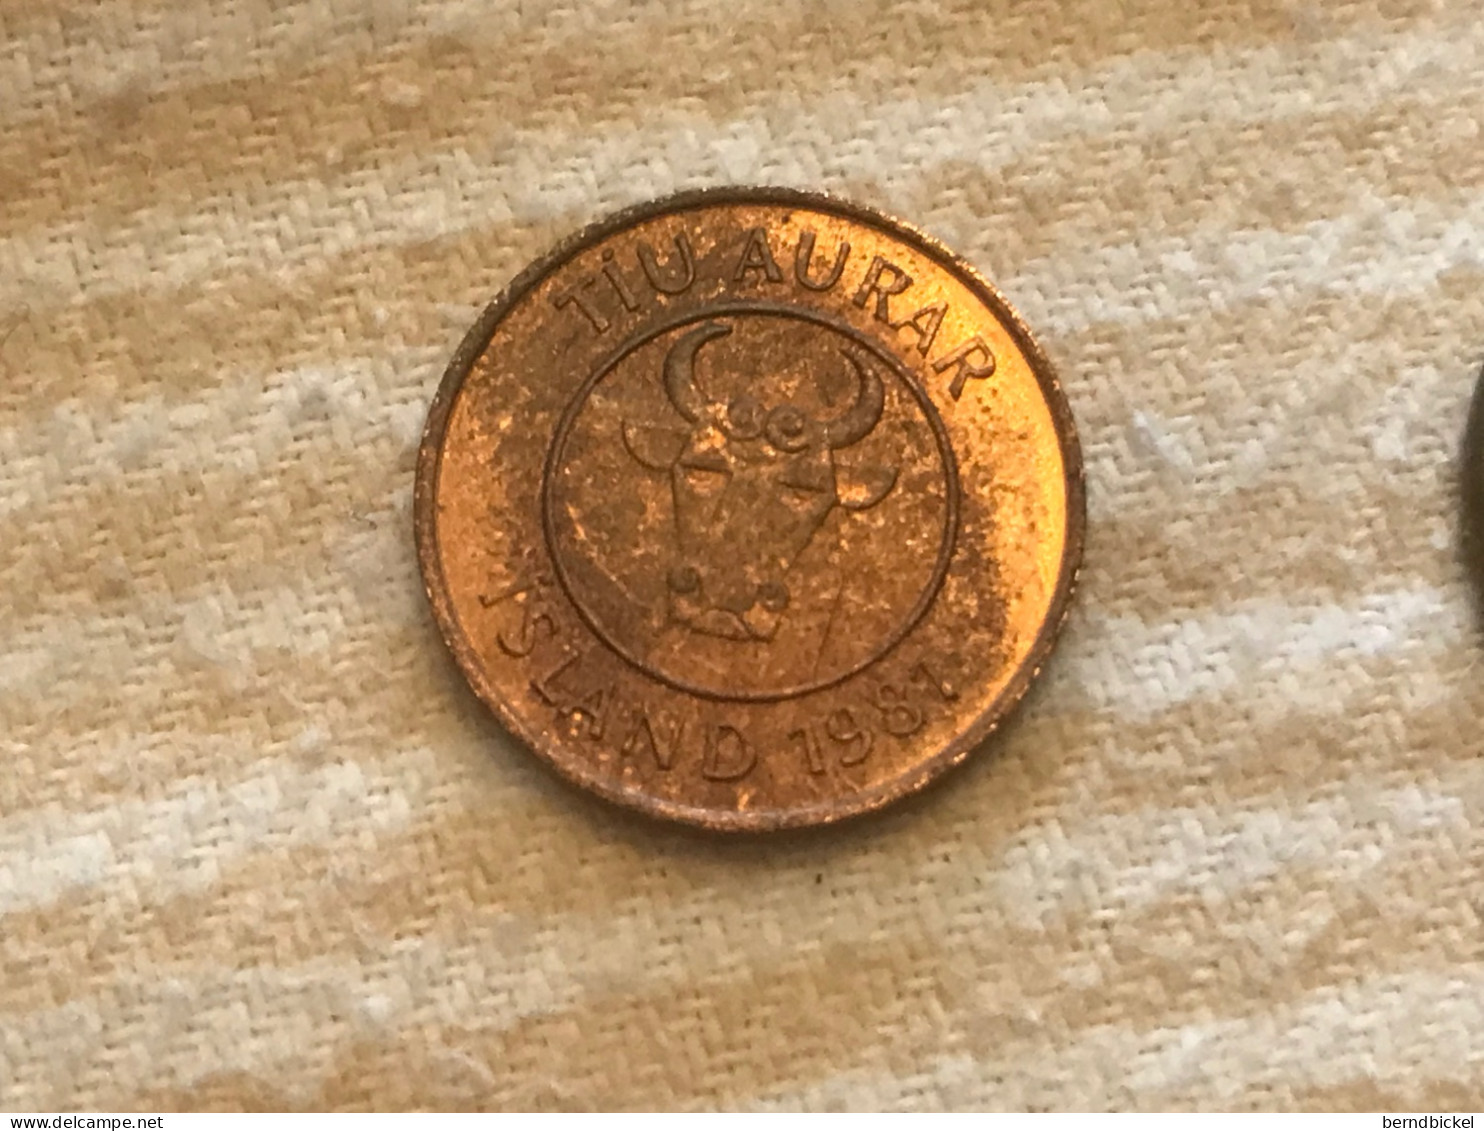 Münze Münzen Umlaufmünze Island 10 Aurar 1981 - Iceland